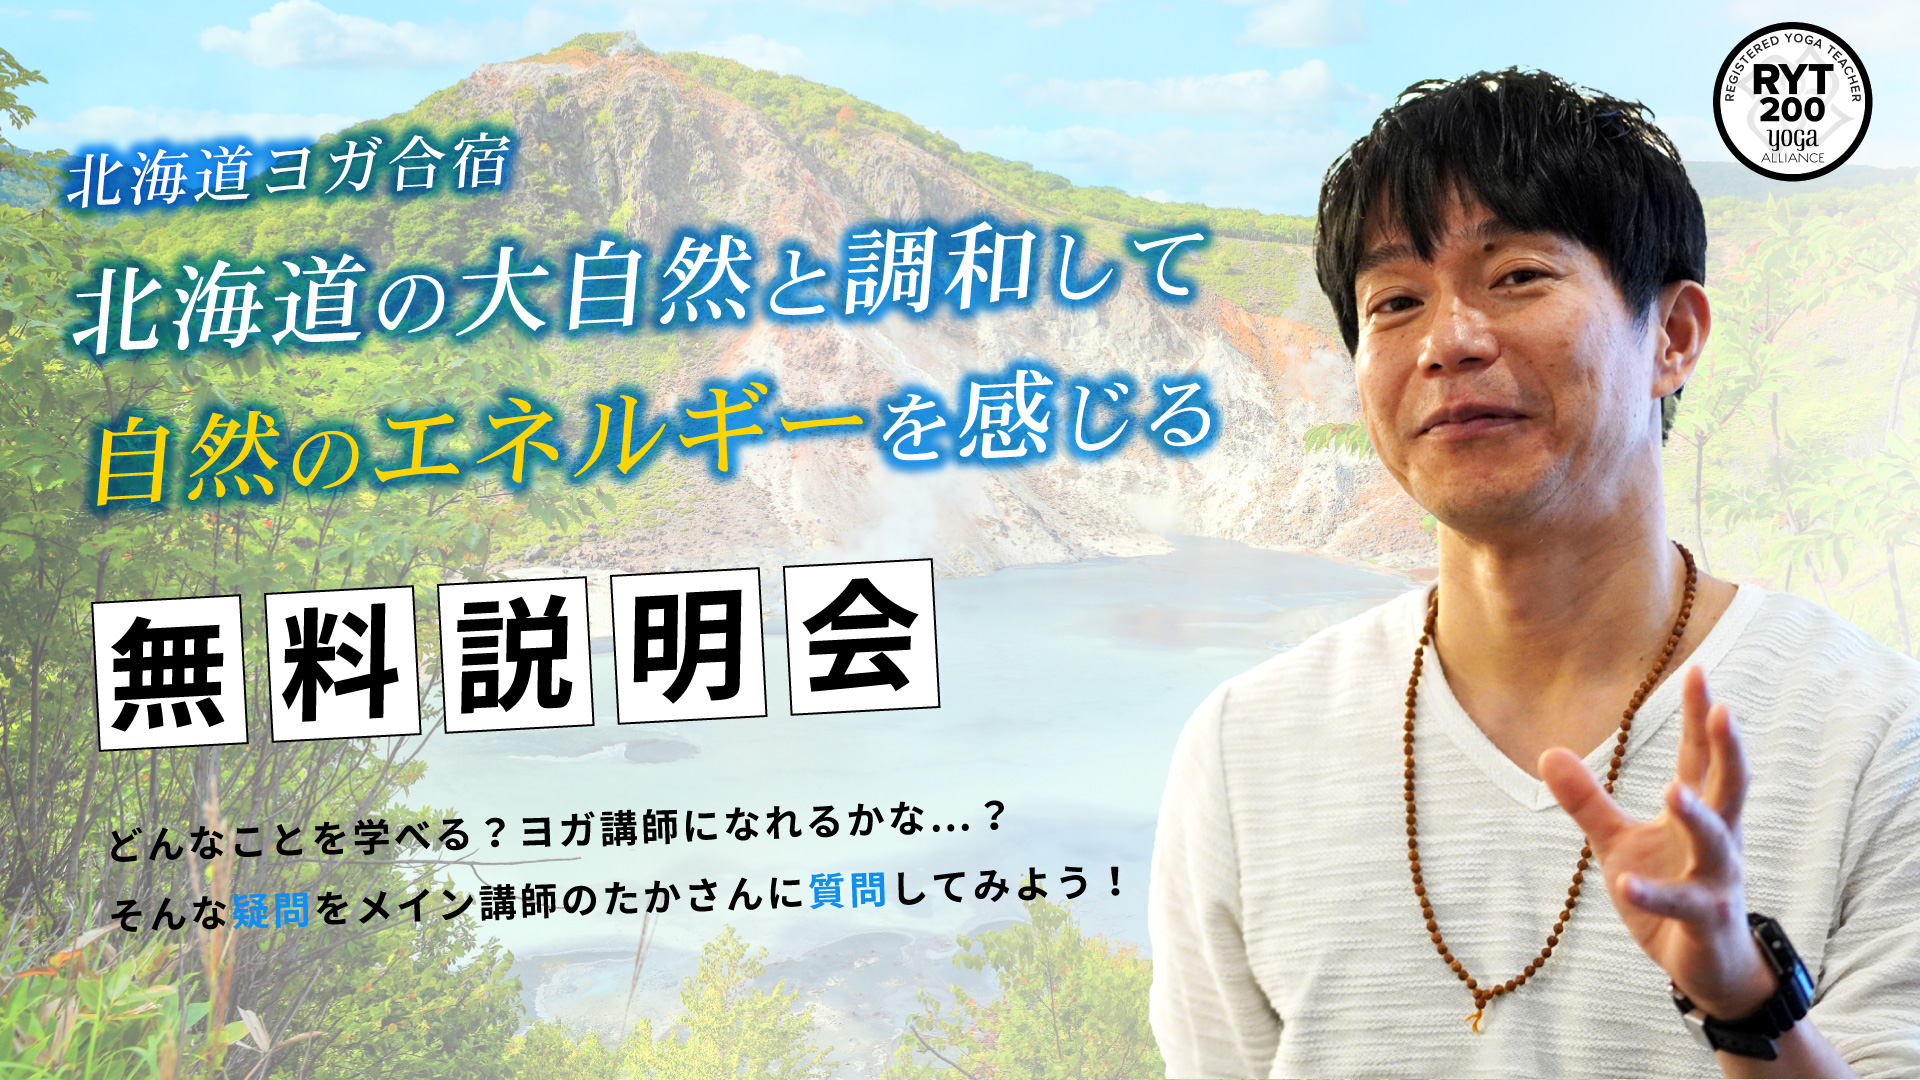 北海道ヨガ合宿RYT200「大自然と調和して自然とエネルギーを感じる」無料説明会